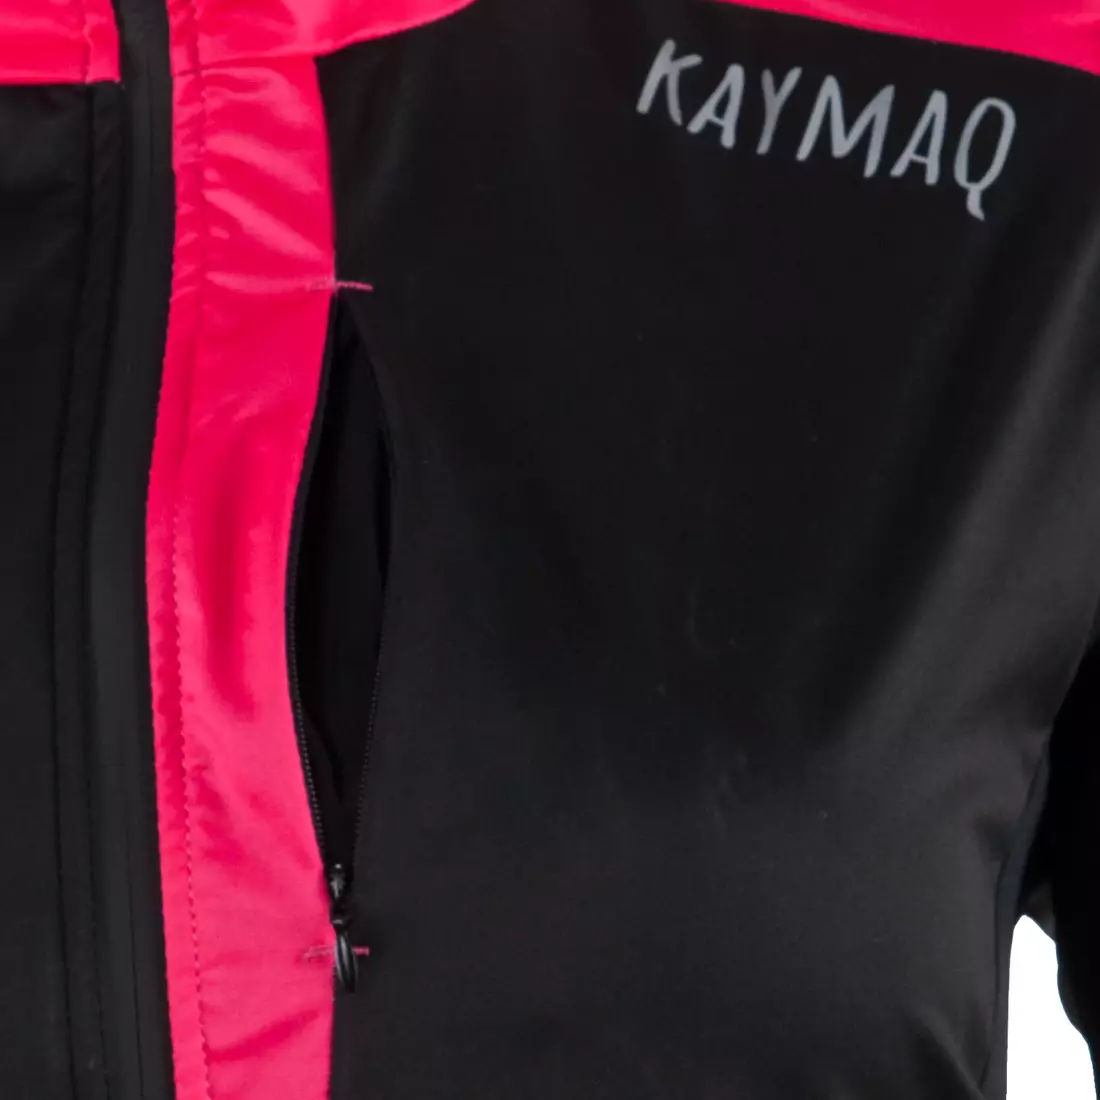 KAYMAQ JWSW-100 geacă de ciclism pentru femei de iarnă softshell negru